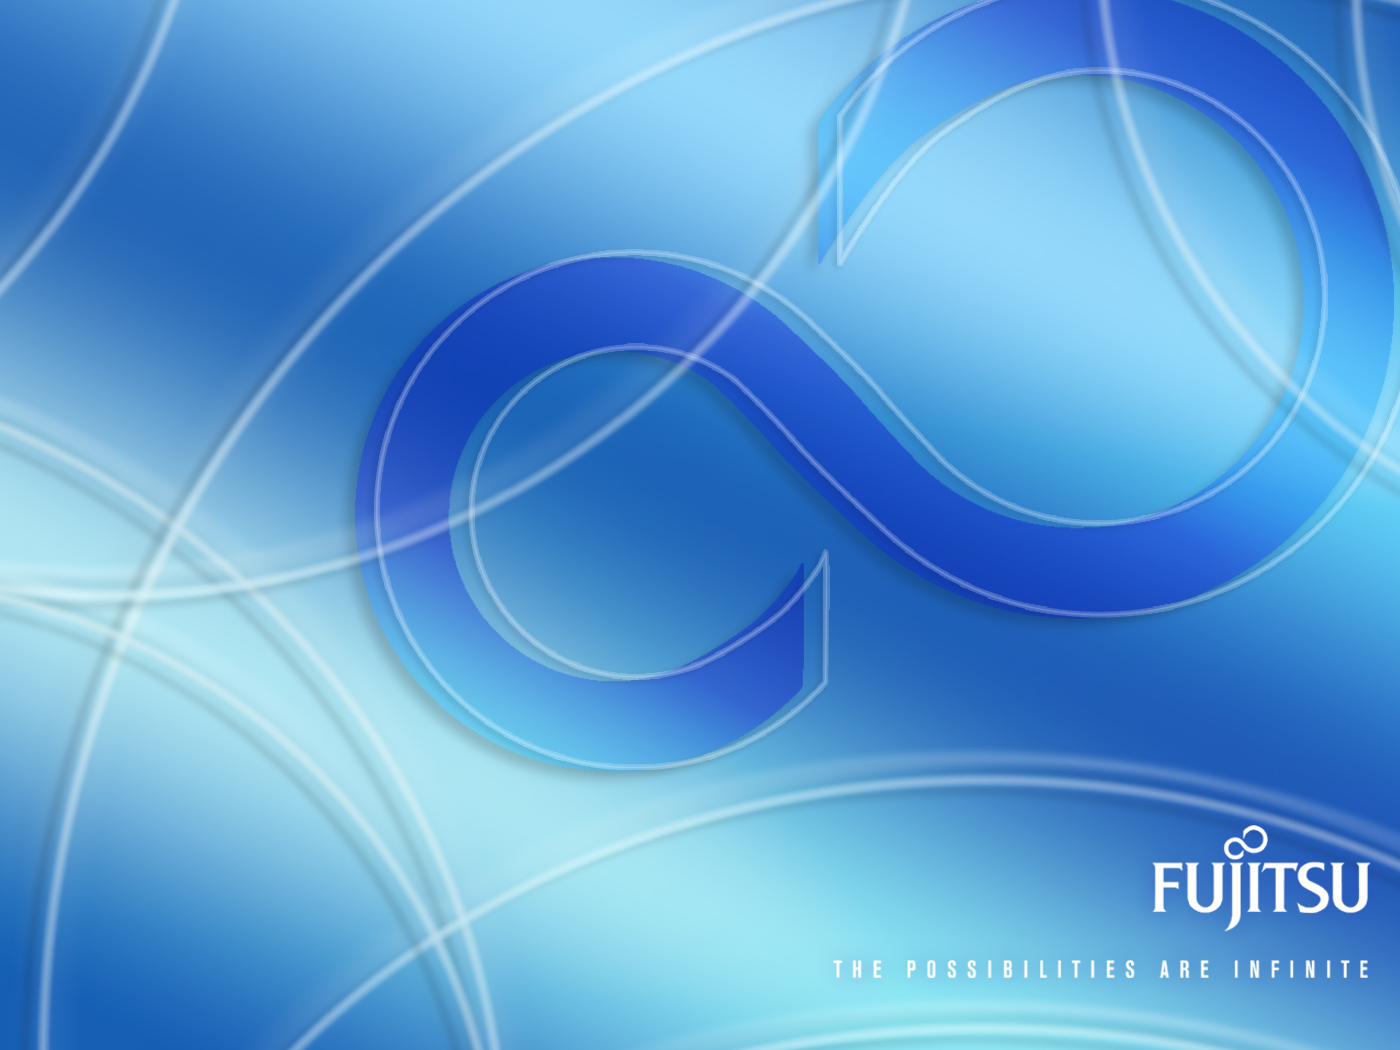 Fujitsu Logos Image Femalecelebrity